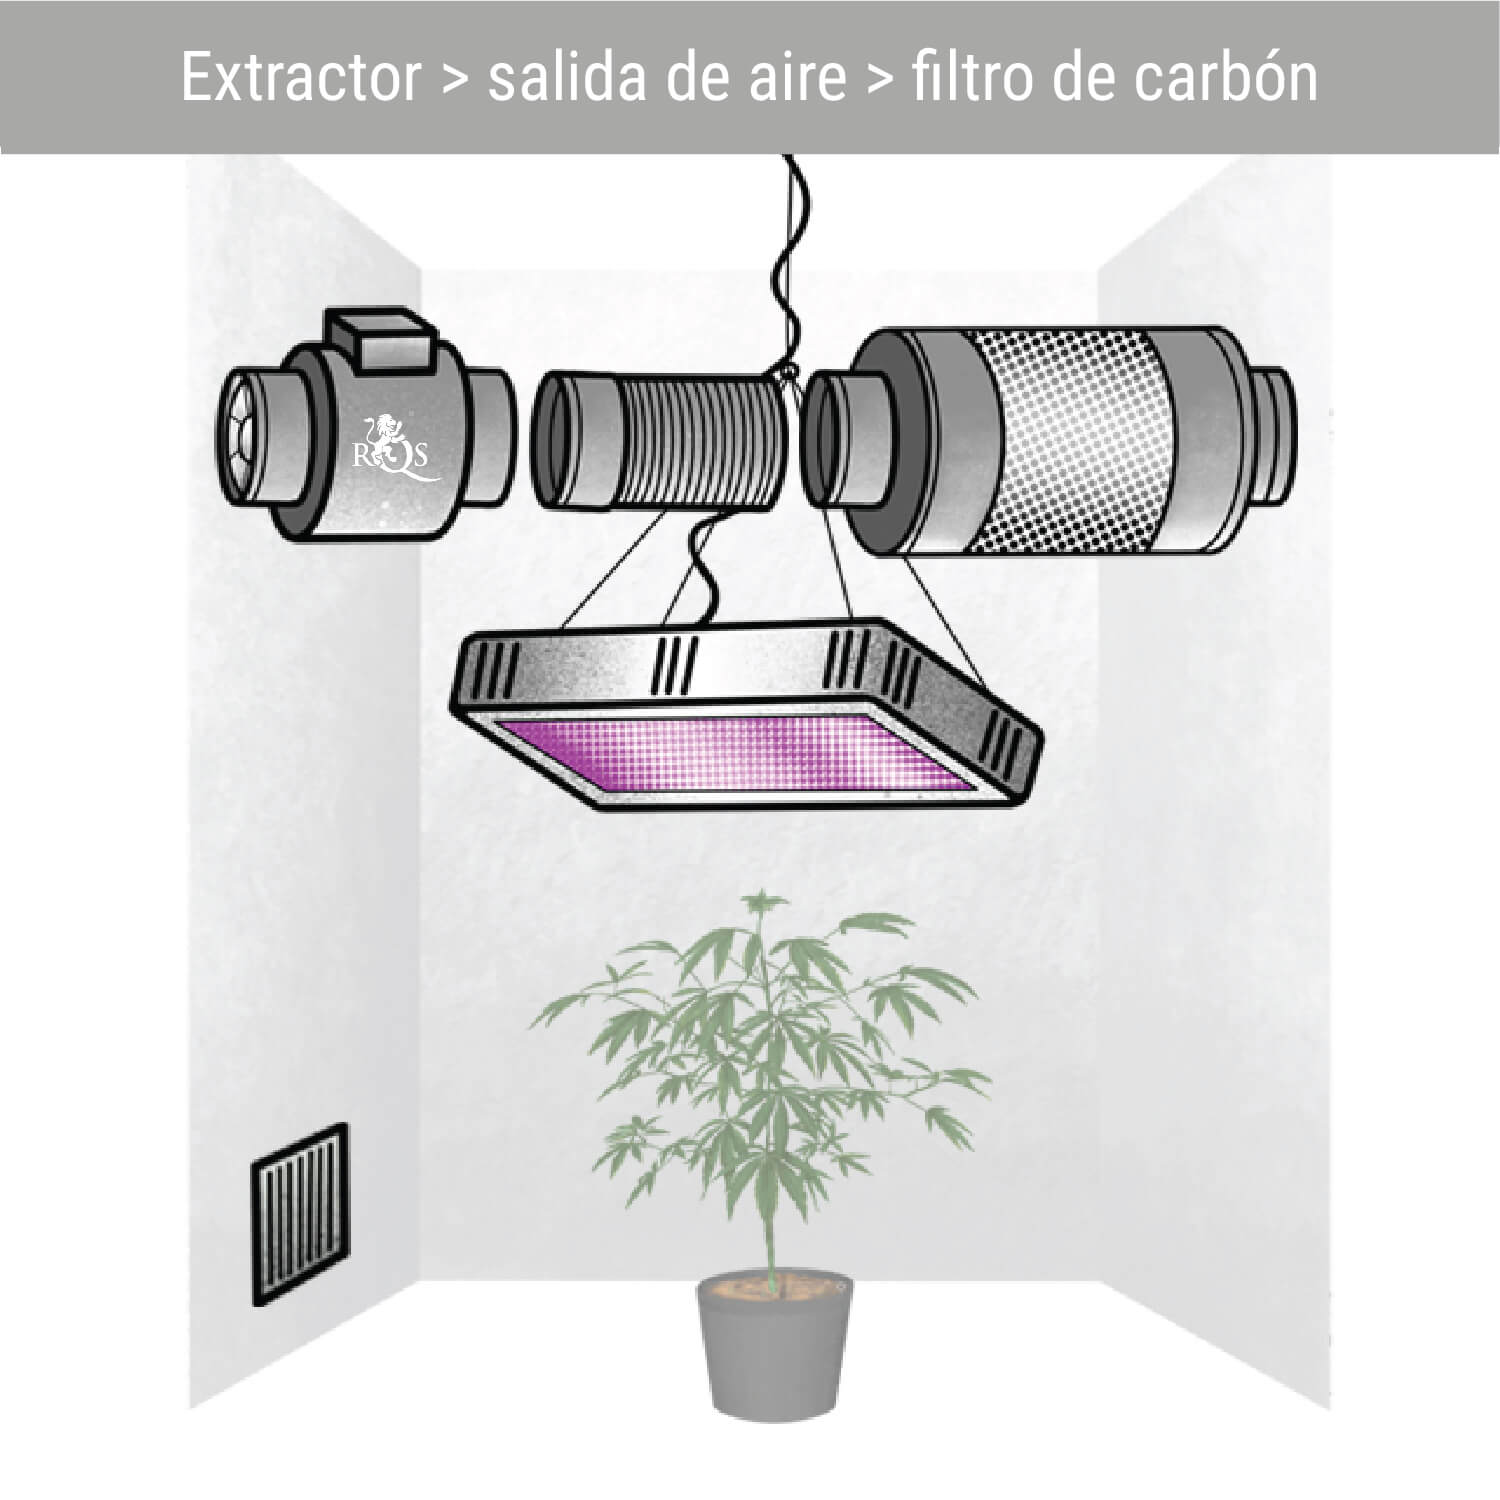 Extractor > salida de aire > filtro de carbón